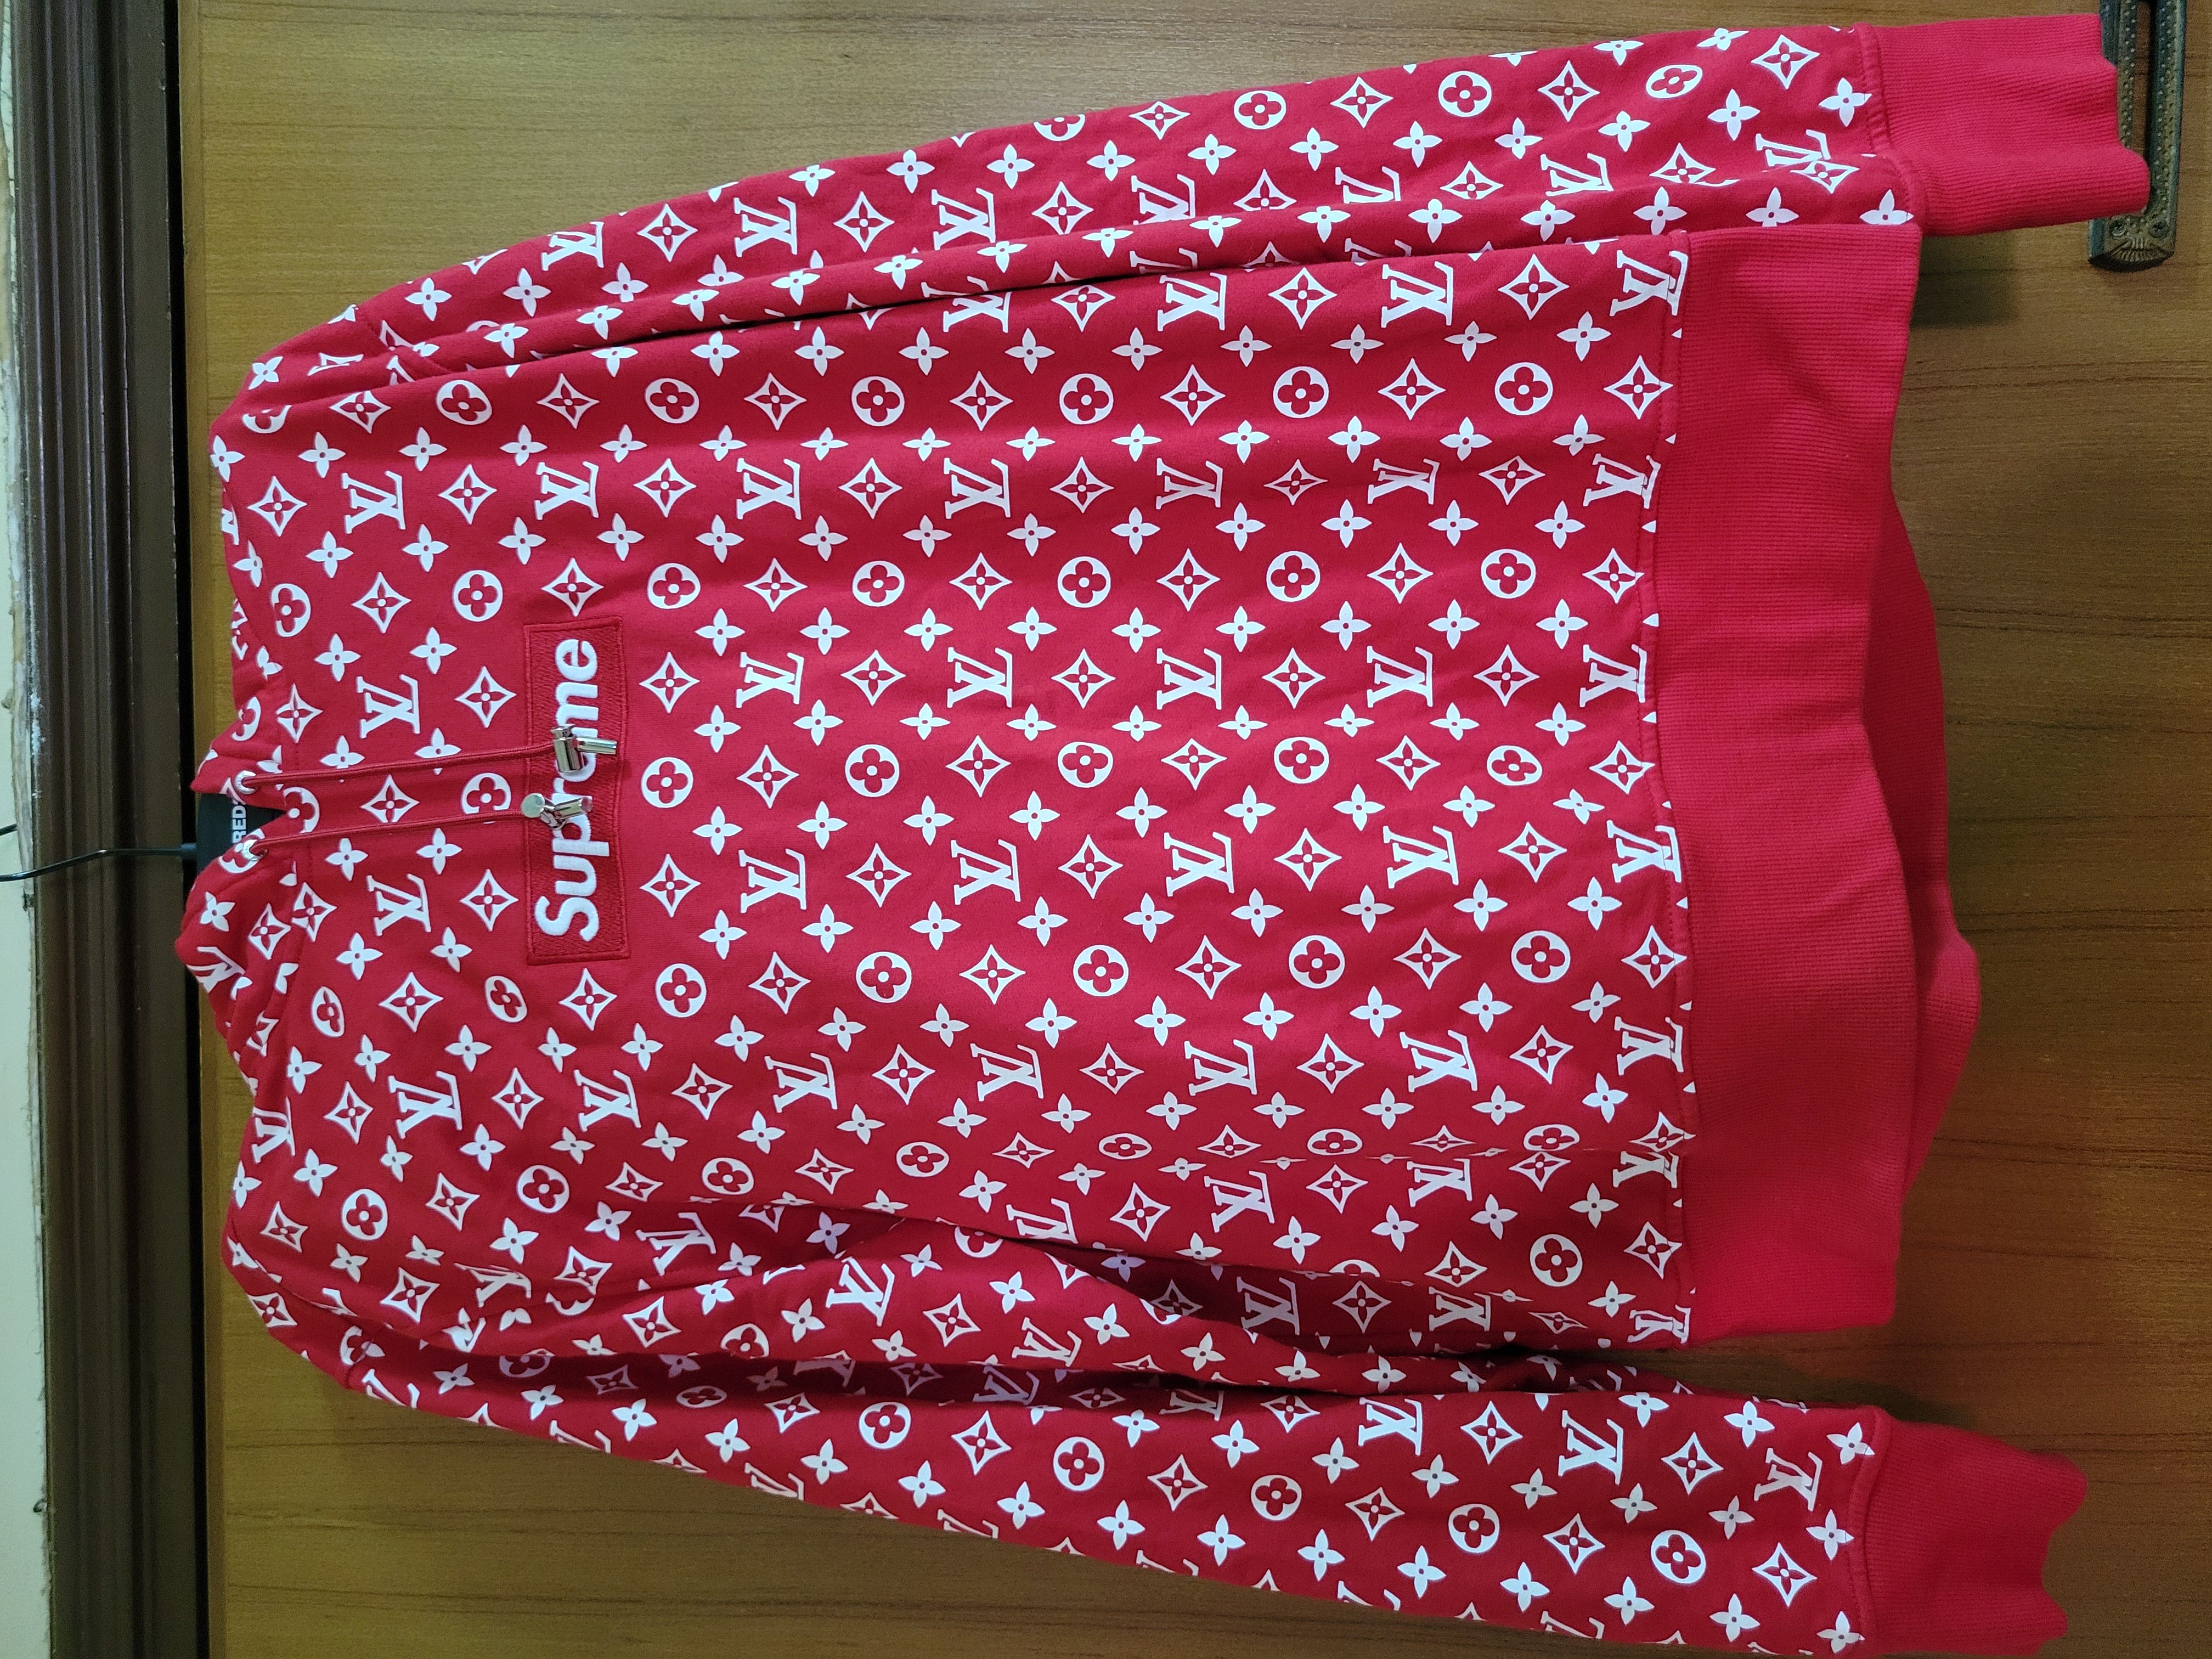 Red cotton knitwear & sweatshirt box logo Louis Vuitton x Supreme